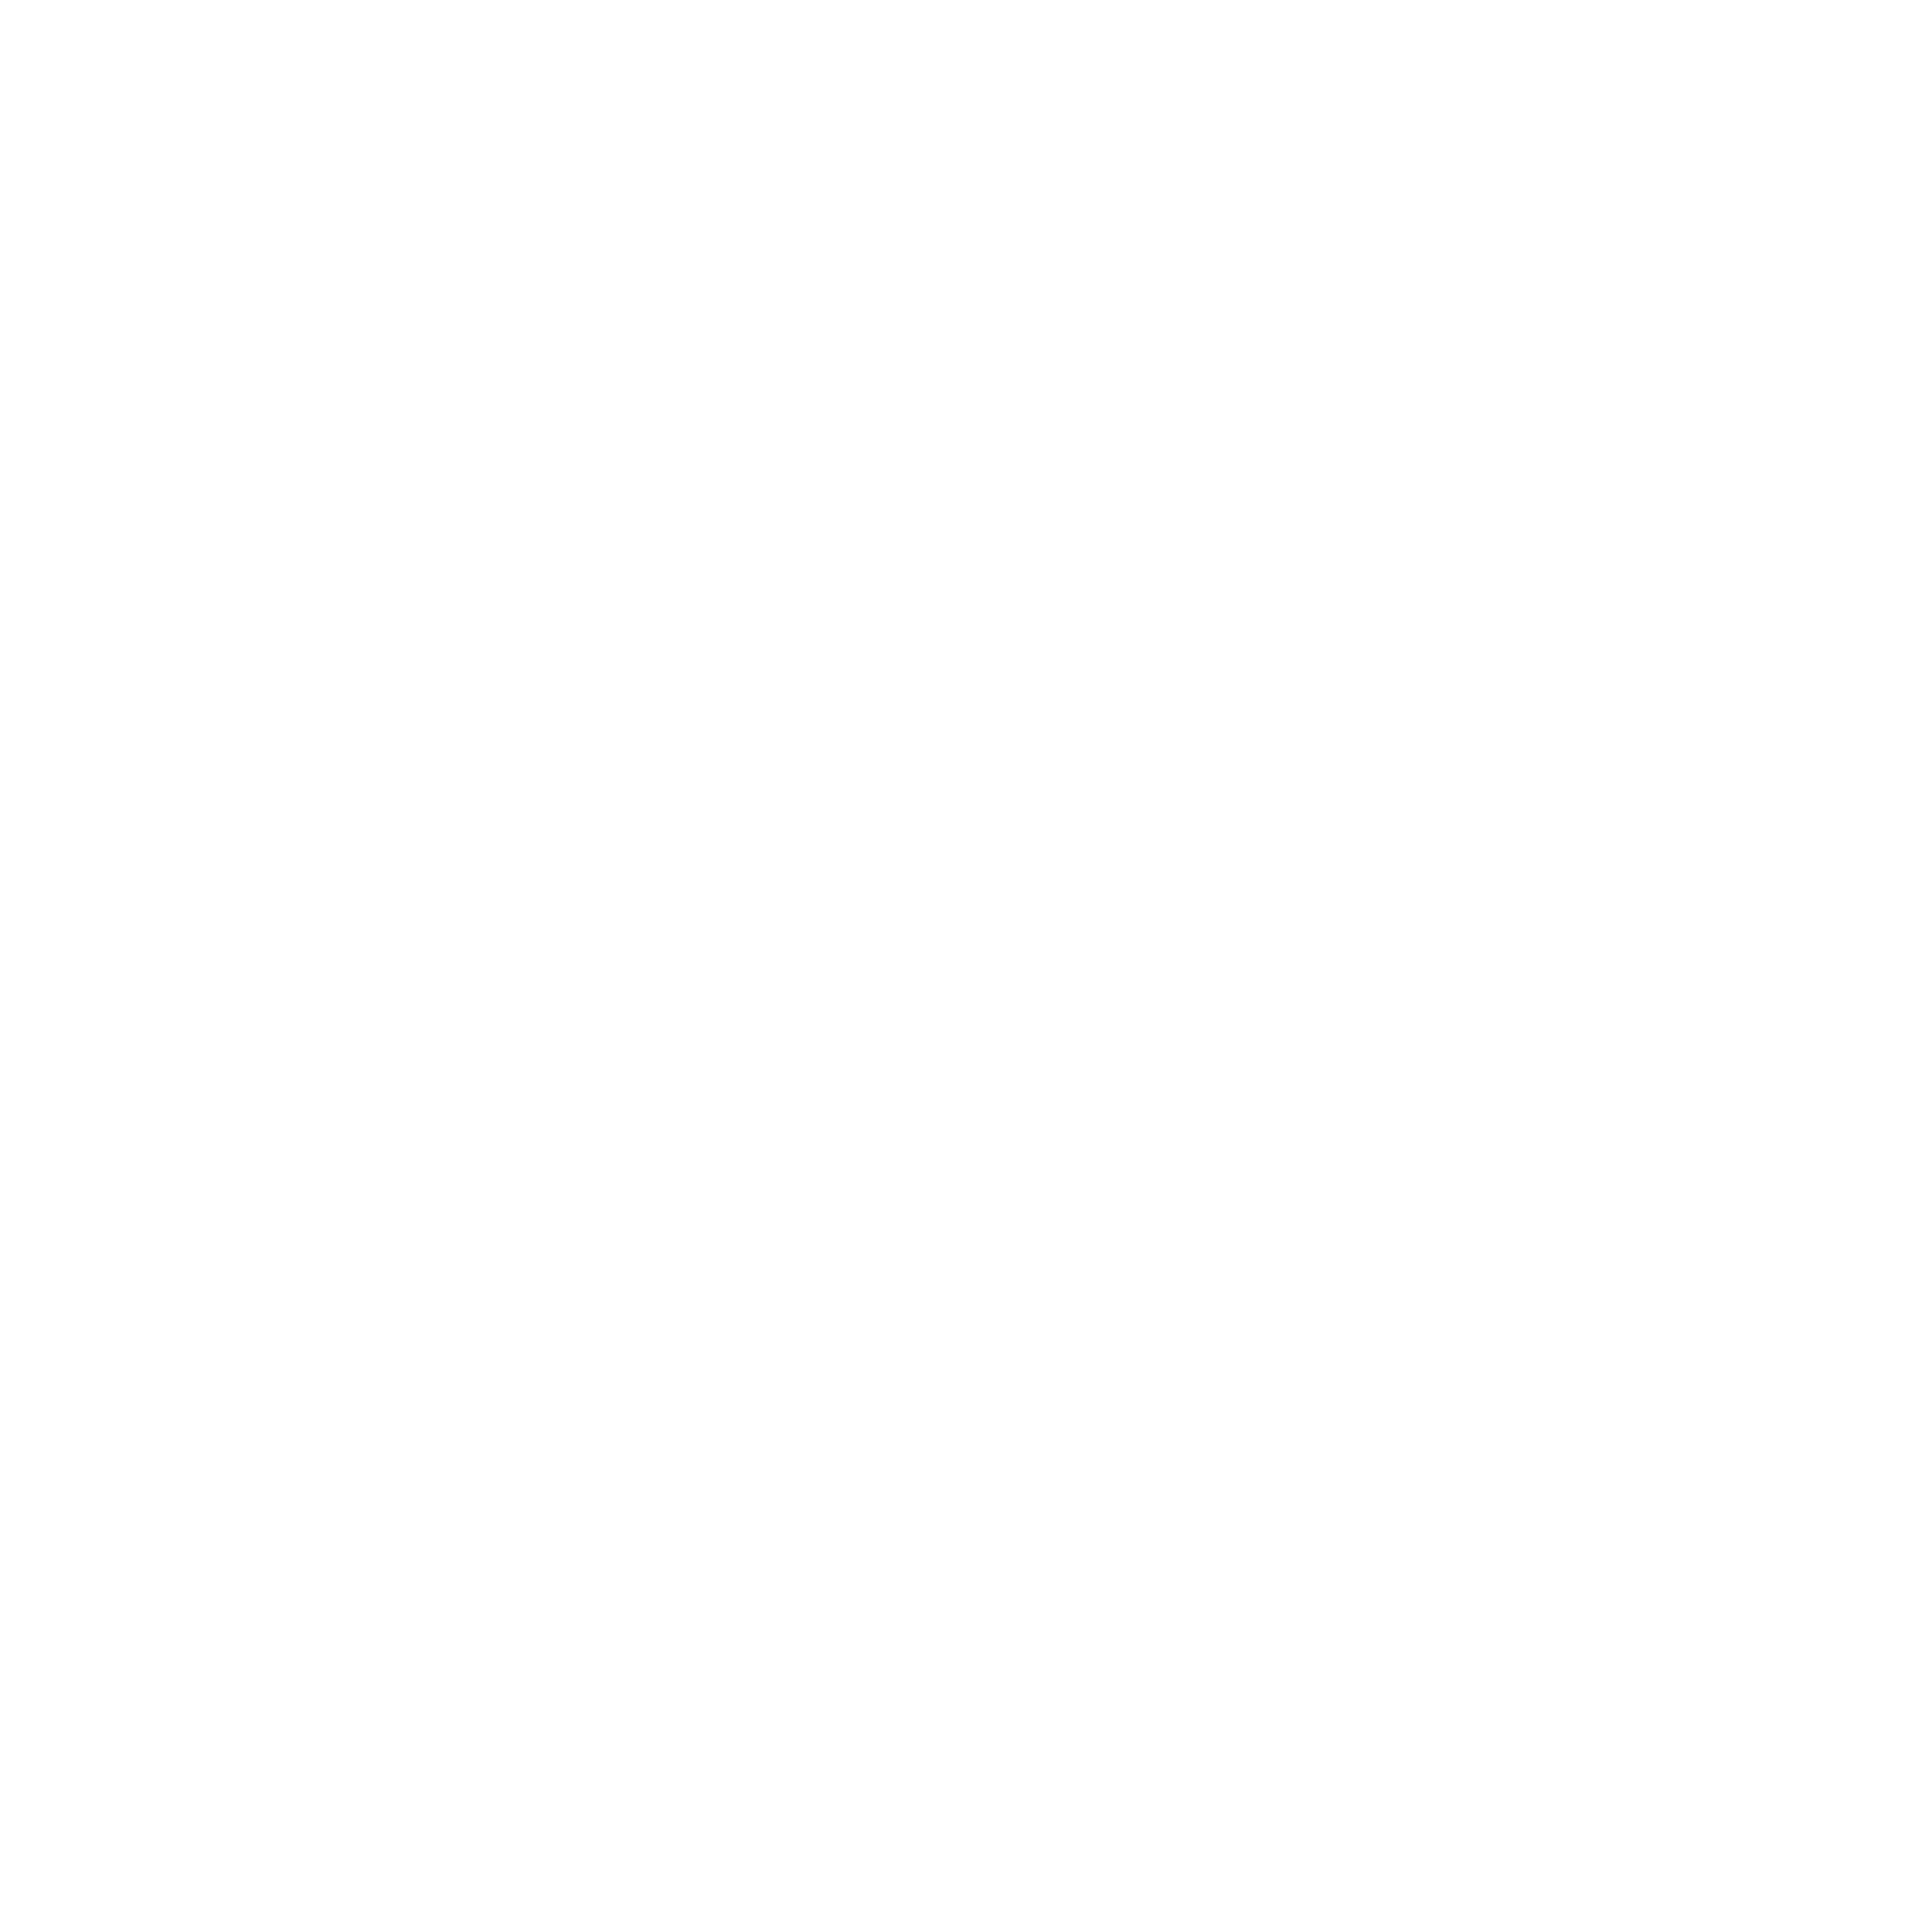 Quip Logo - Dril Quip Logo PNG Transparent & SVG Vector